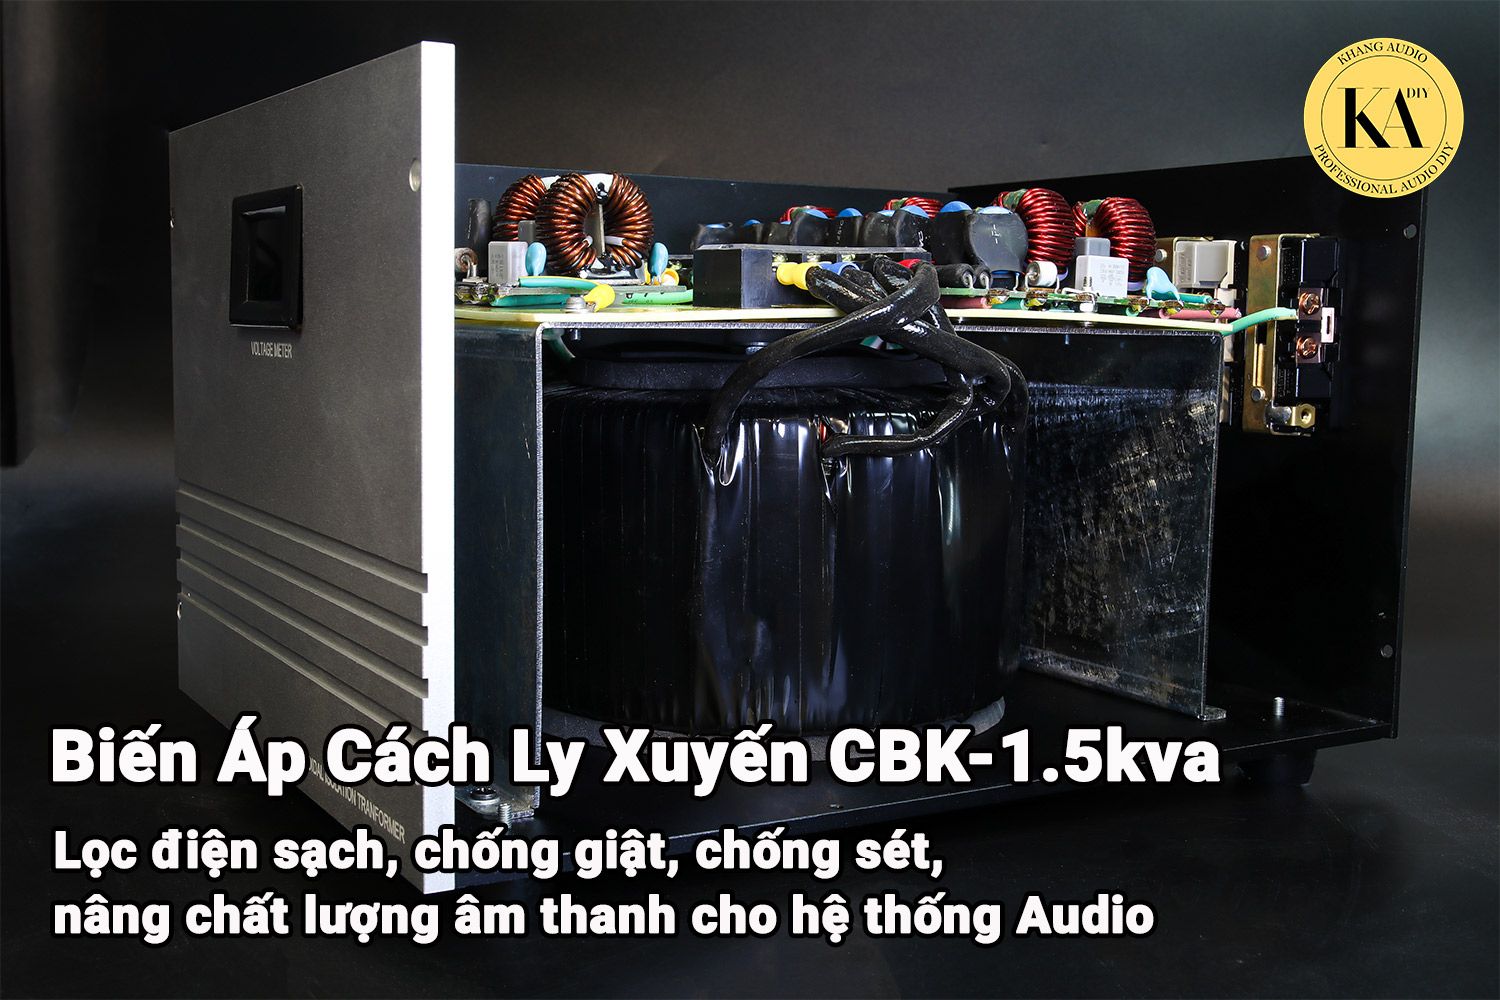 Biến Áp Cách Ly 1.5kva Khang Audio DIY cho hệ thống sử dụng nhiều nguồn điện 0336380099